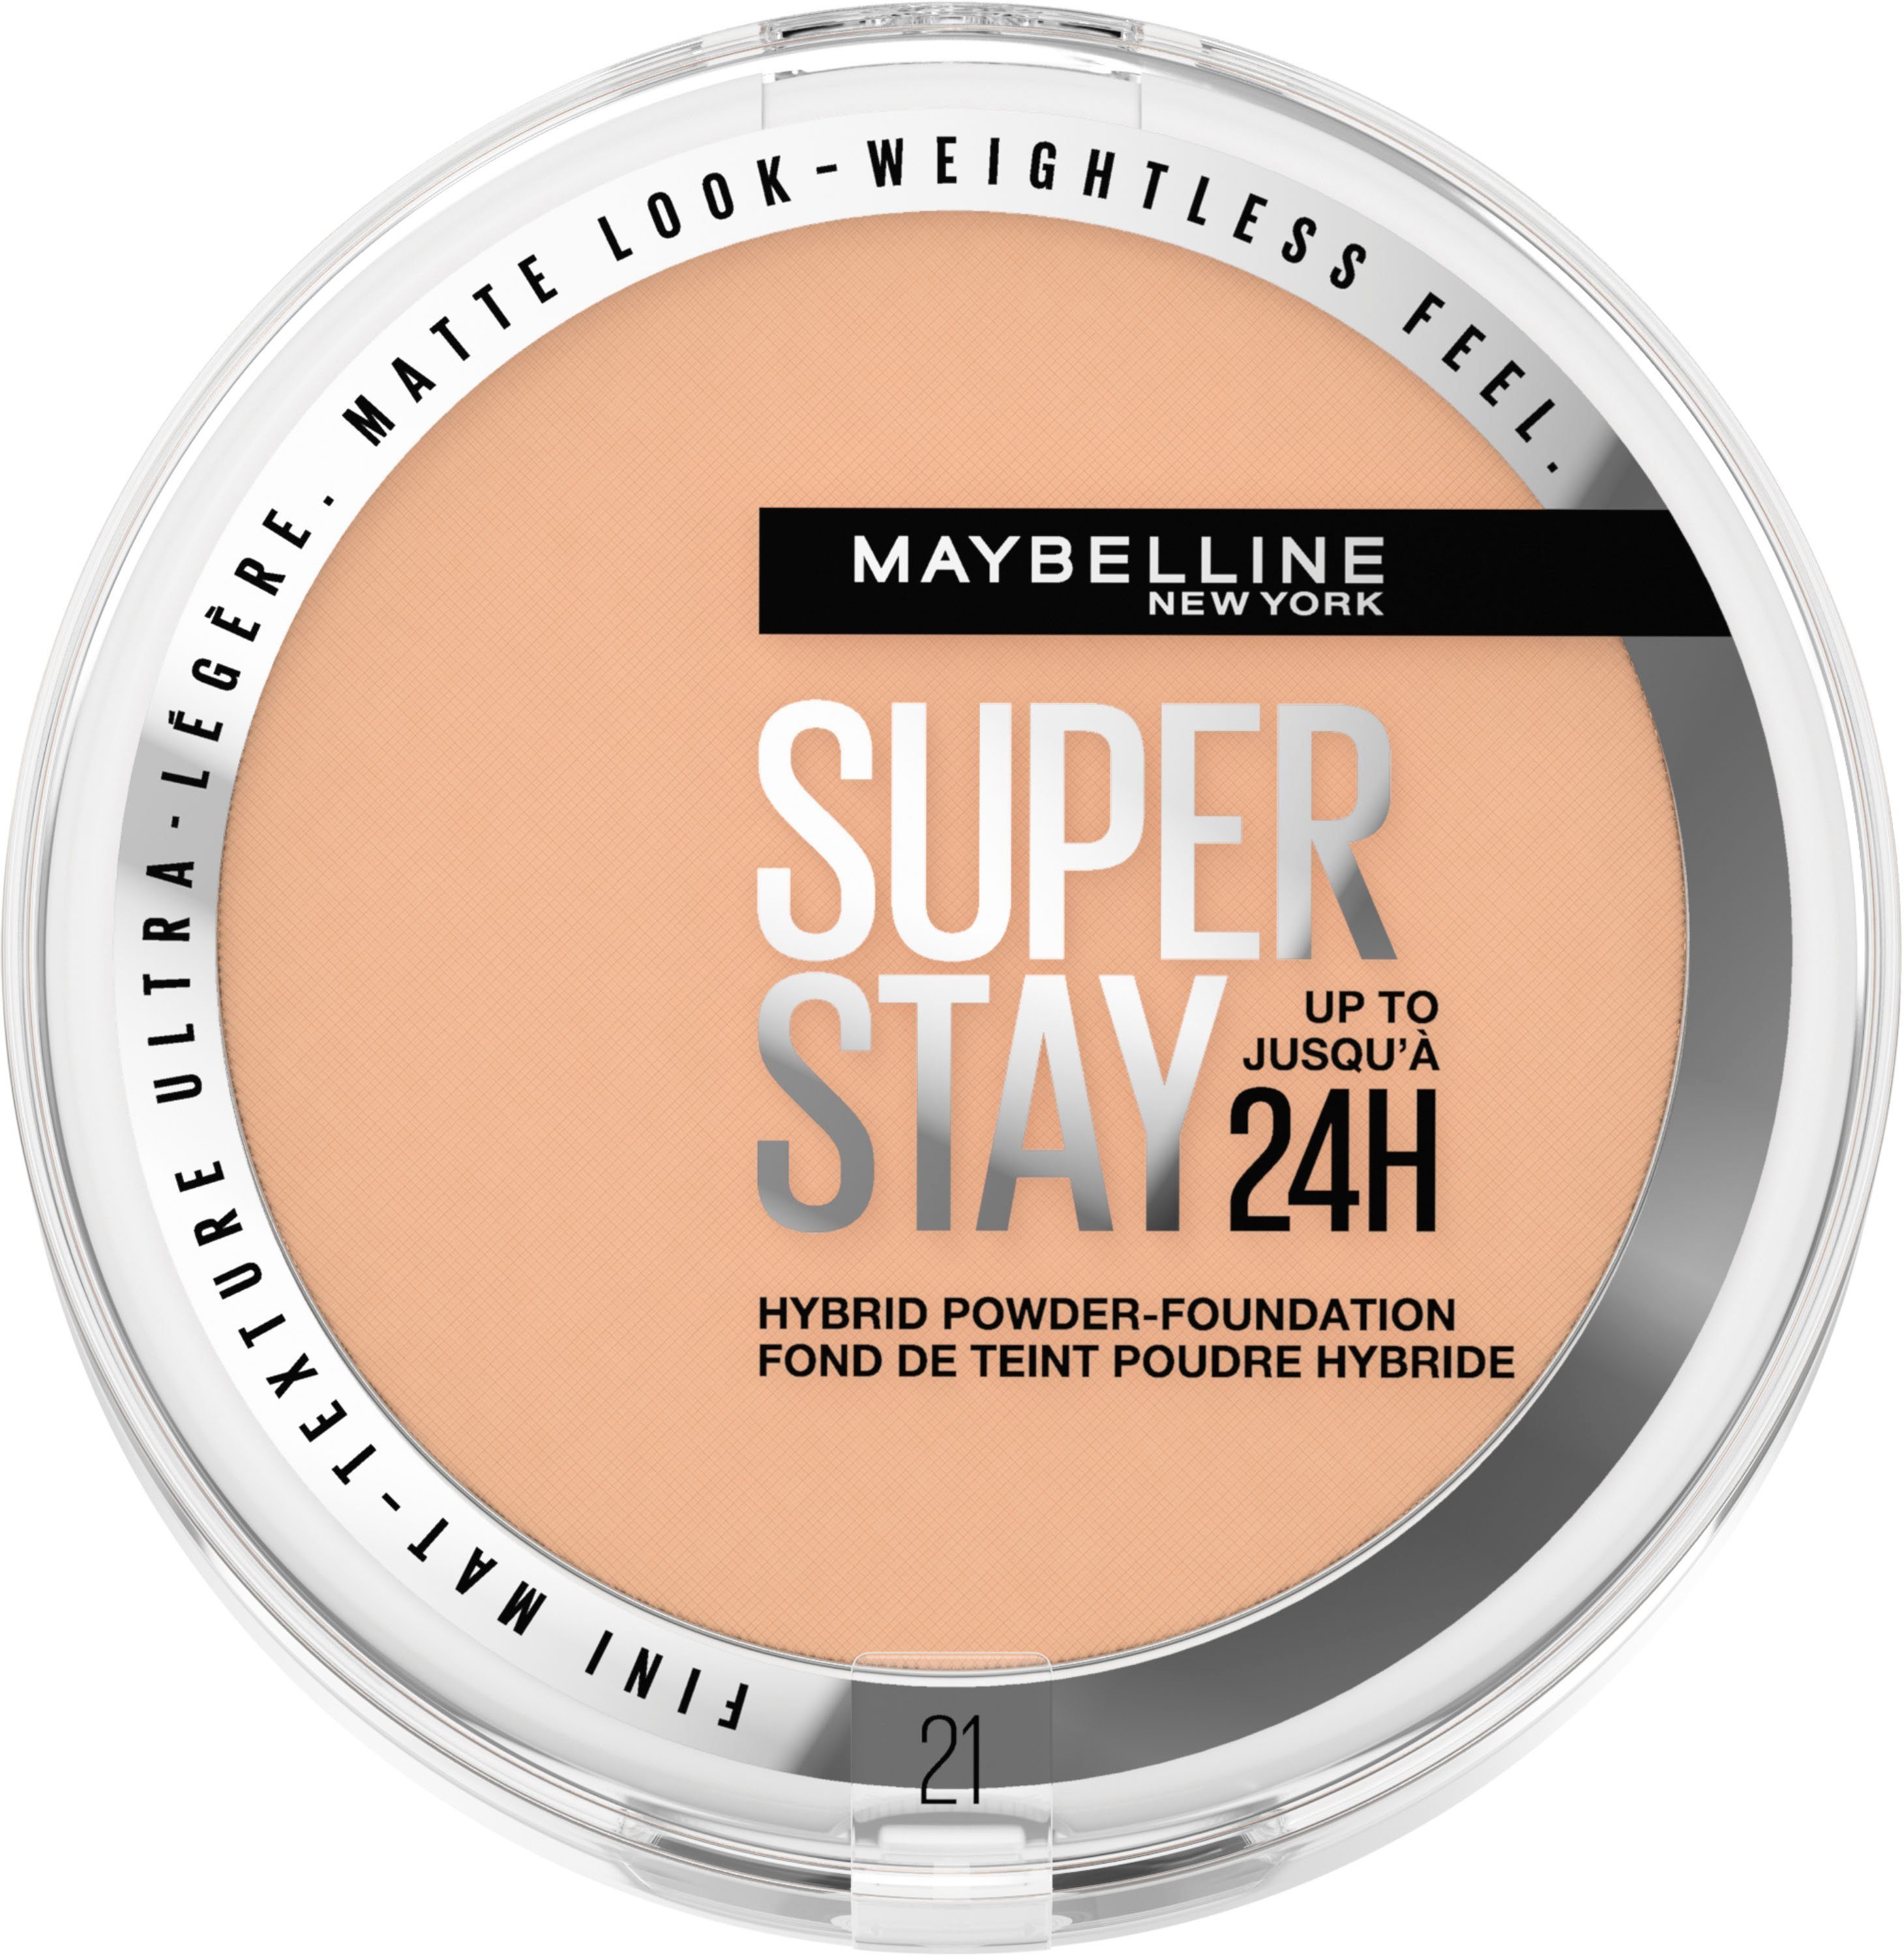 Mit schlichtem Design MAYBELLINE NEW YORK Foundation Maybelline Hybrides Stay Super York New Puder Make-Up